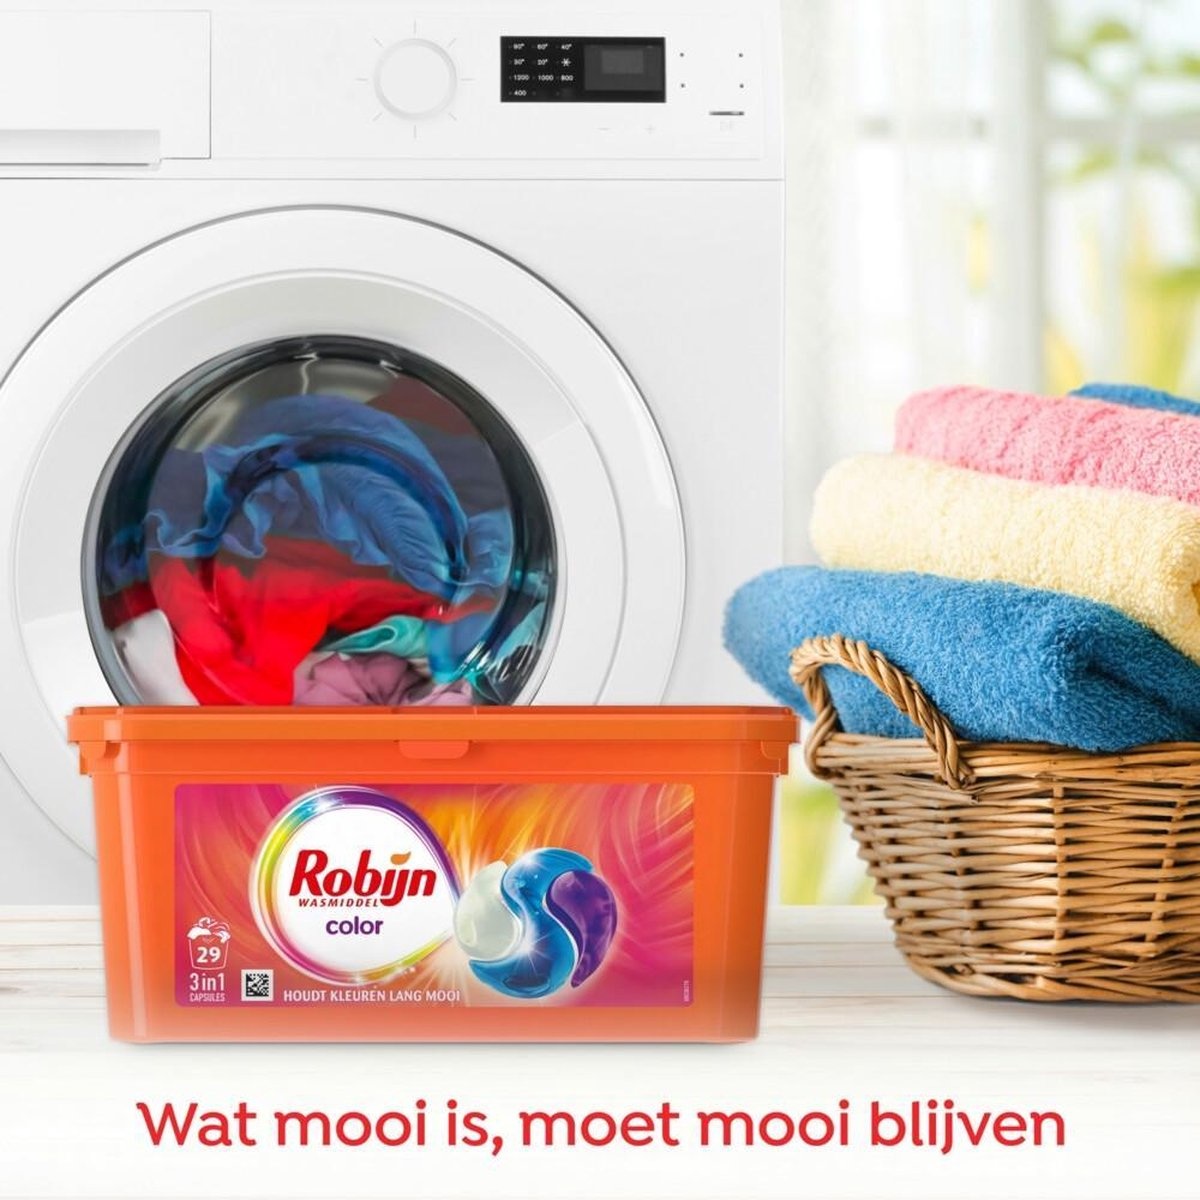 Robijn Color 3 in 1 Waschkapseln speziell für Buntwäsche - 29 Wäschen